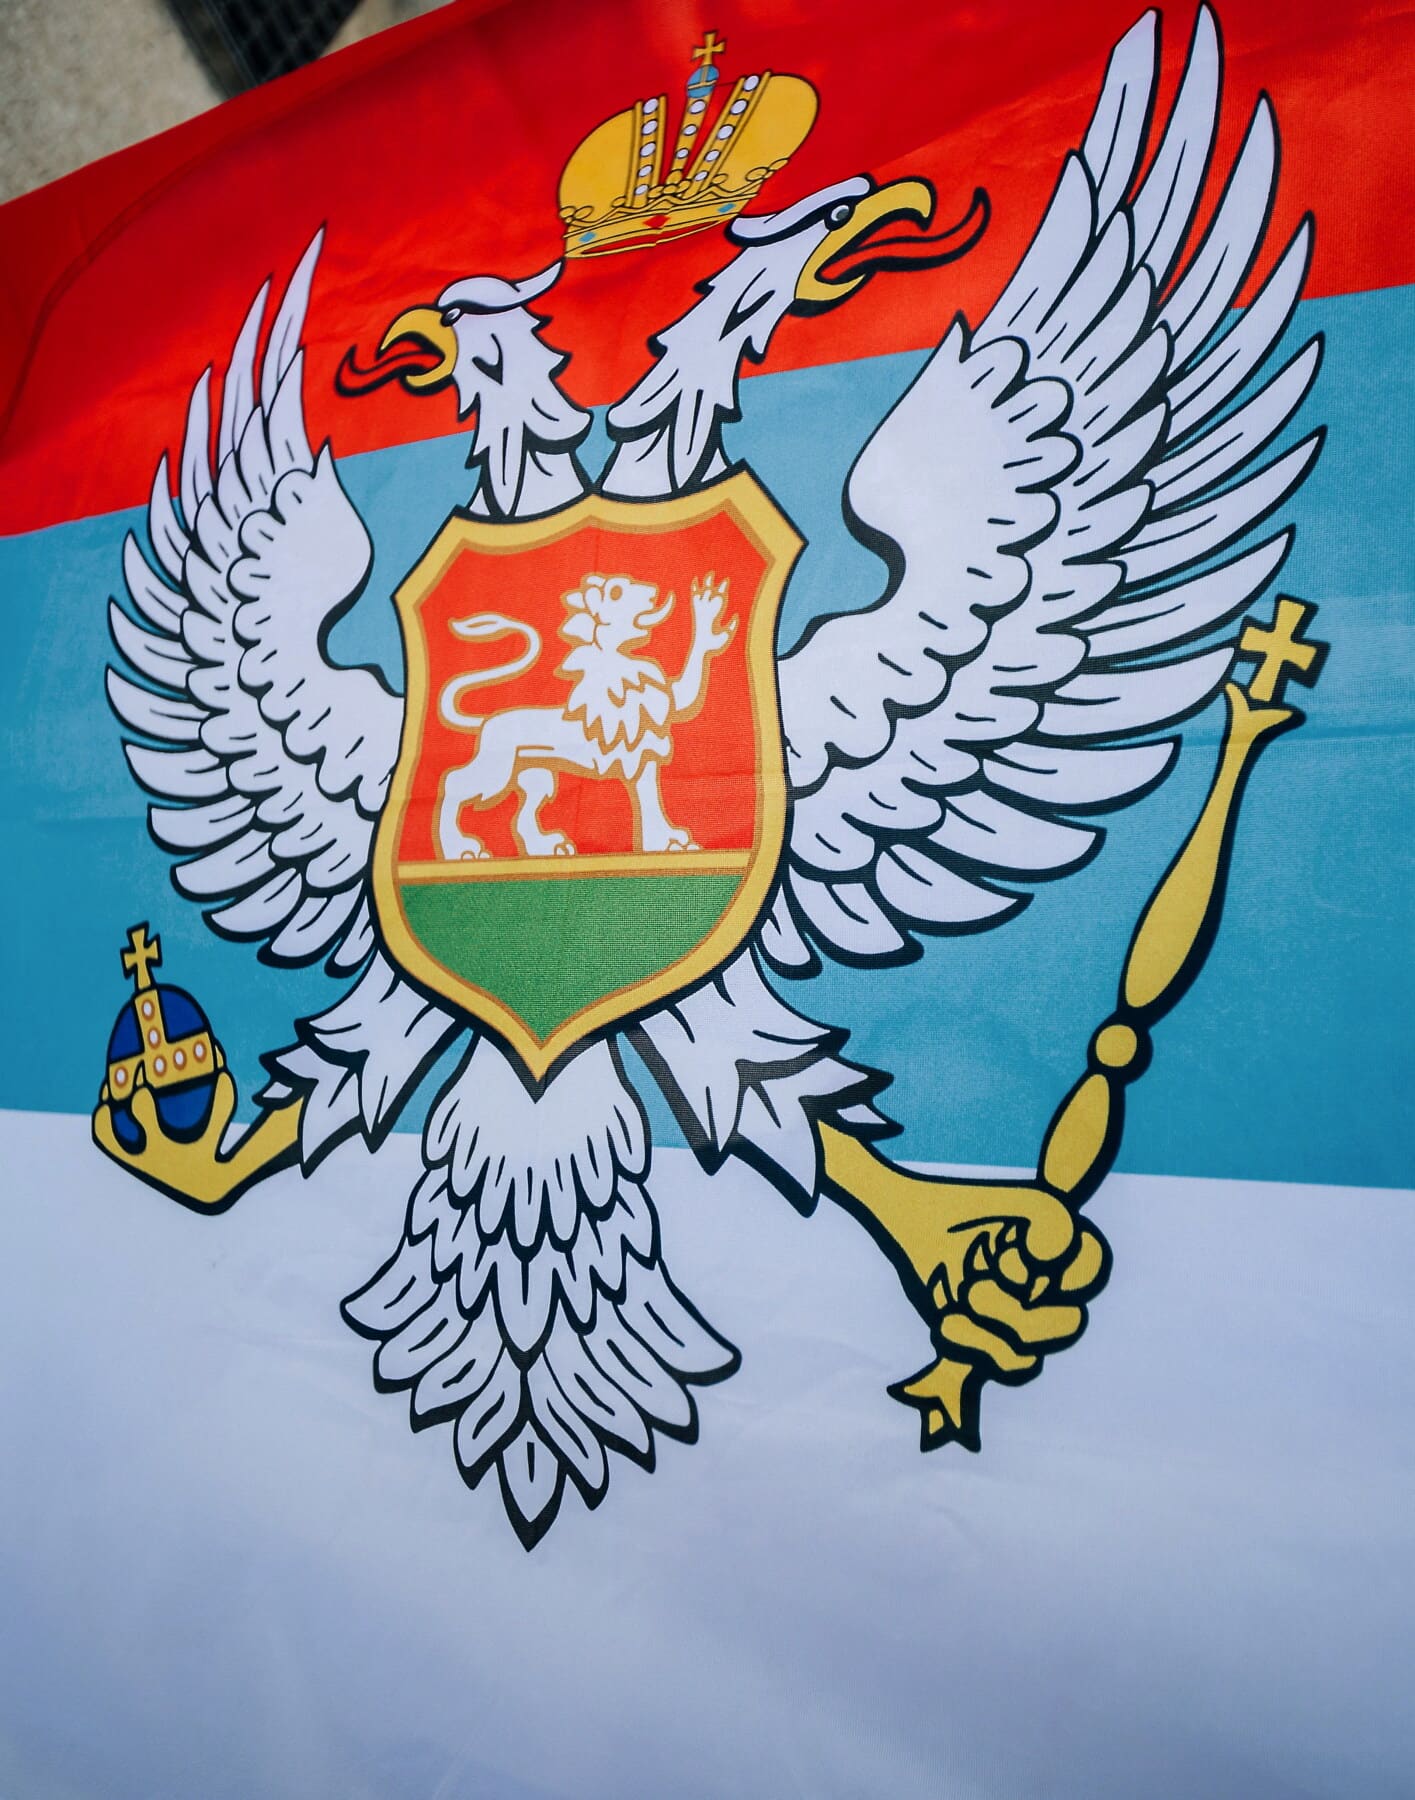 Serbien, Örn, heraldik, sköld, illustration, emblem, flagga, patriotism, design, riddare